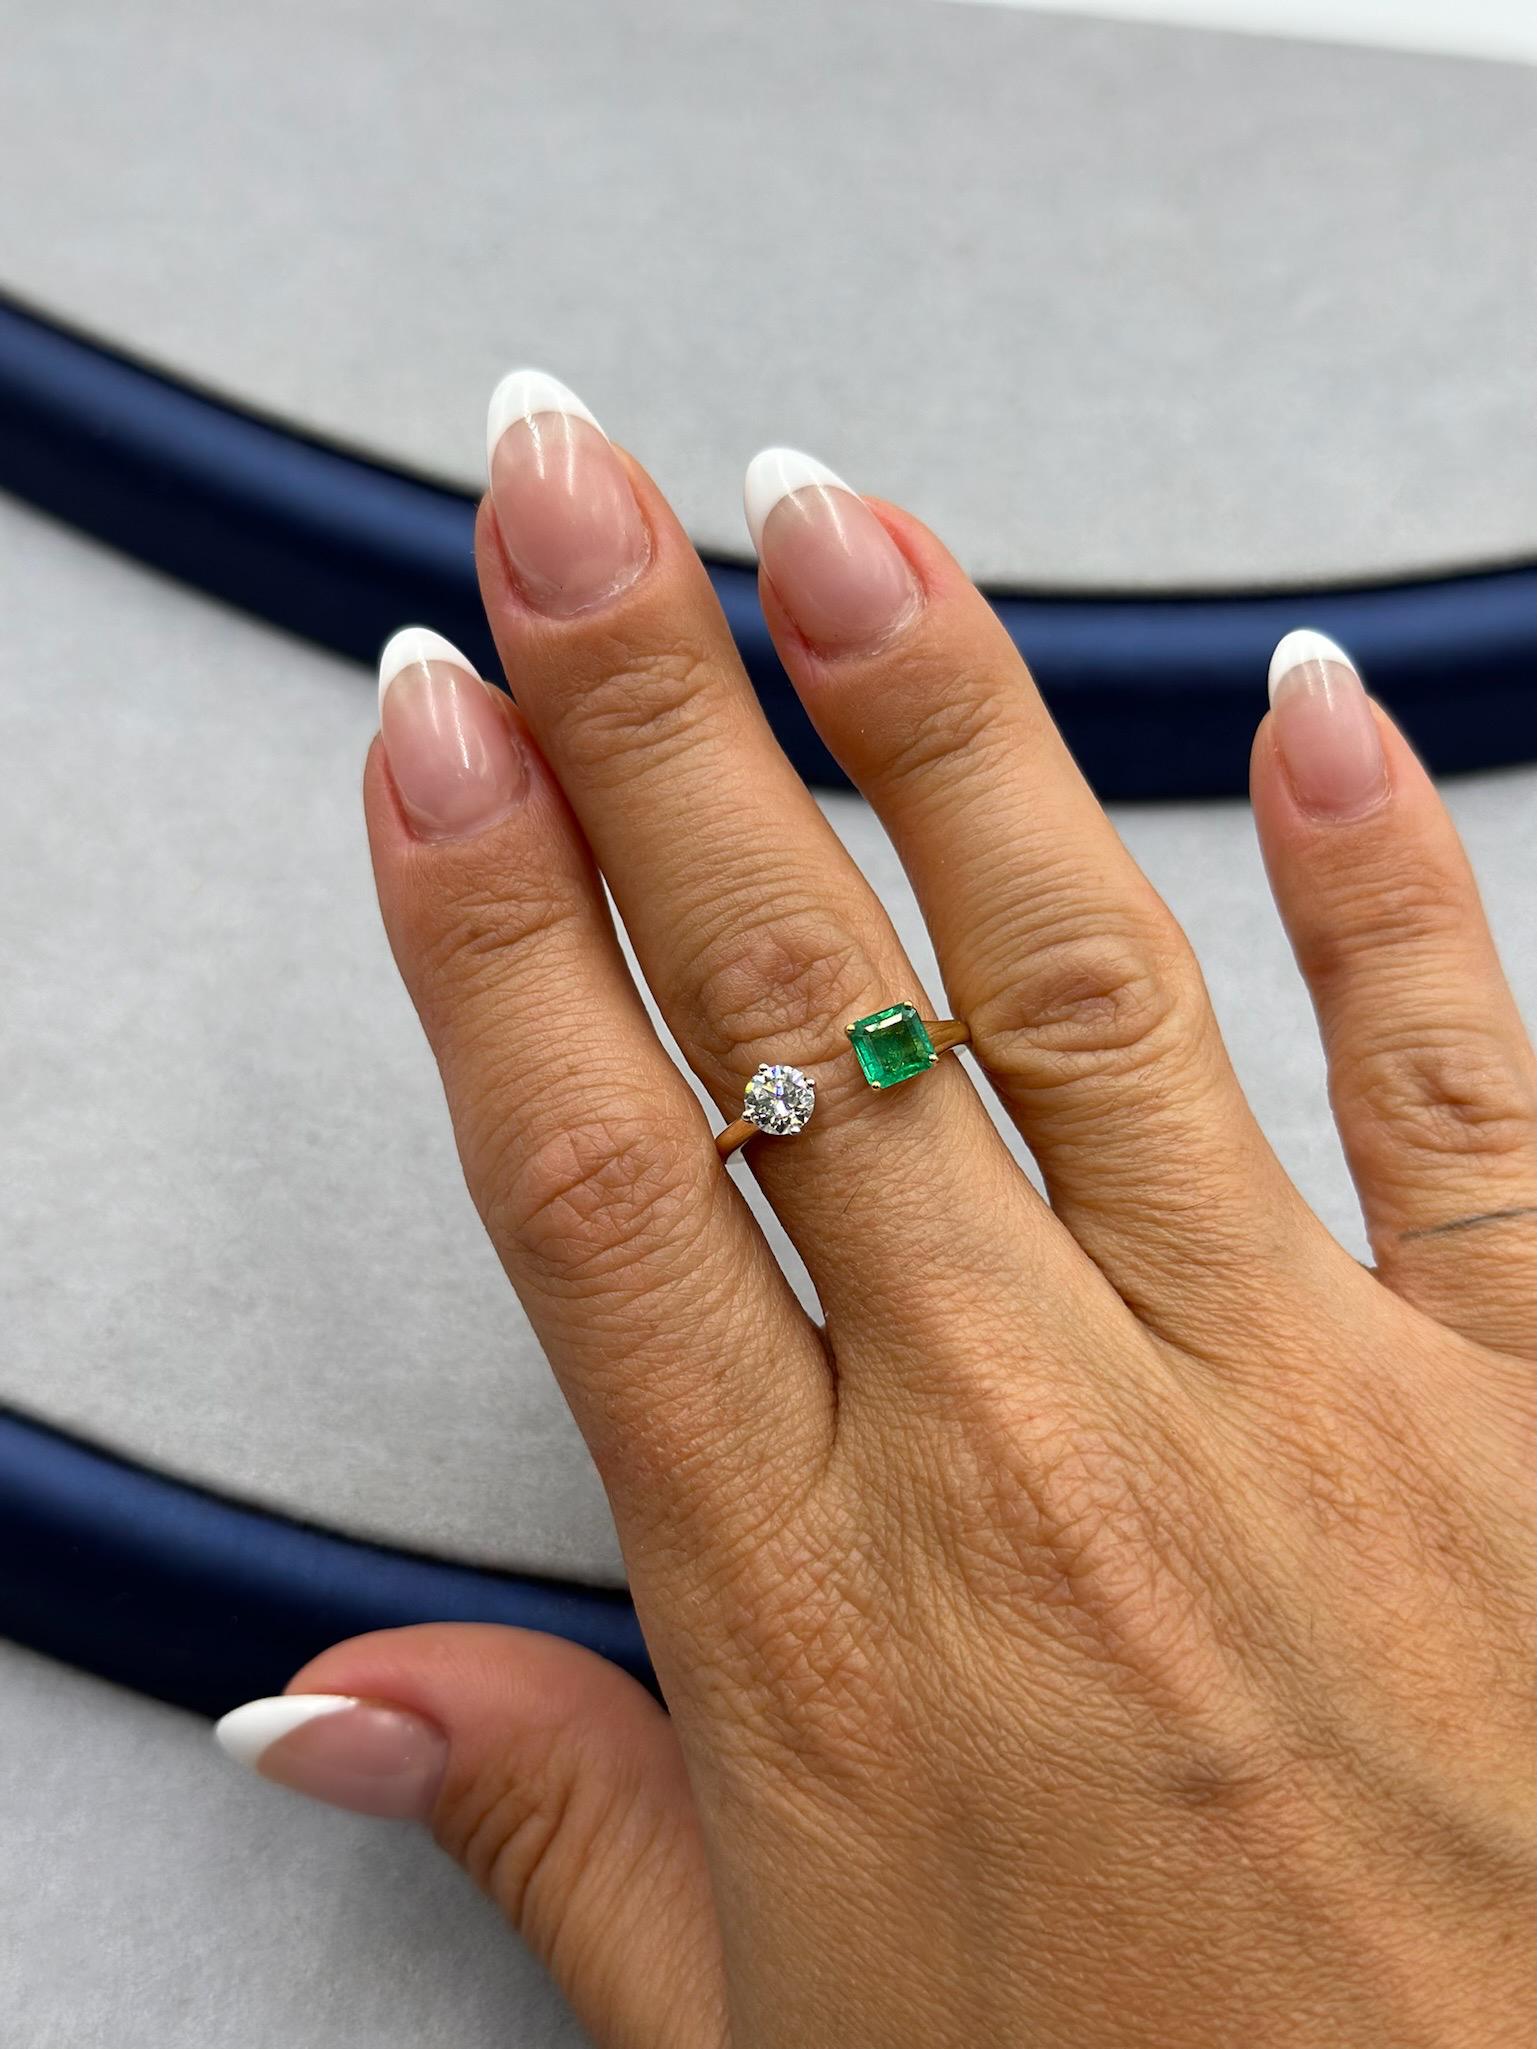 Unser bezaubernder Smaragd- und Diamant-Bypass-Ring ist eine harmonische Symphonie aus den Schätzen der Natur und exquisiter Handwerkskunst. Dieser bemerkenswerte Ring aus luxuriösem 18-karätigem Gelbgold präsentiert einen fesselnden 0,56-karätigen